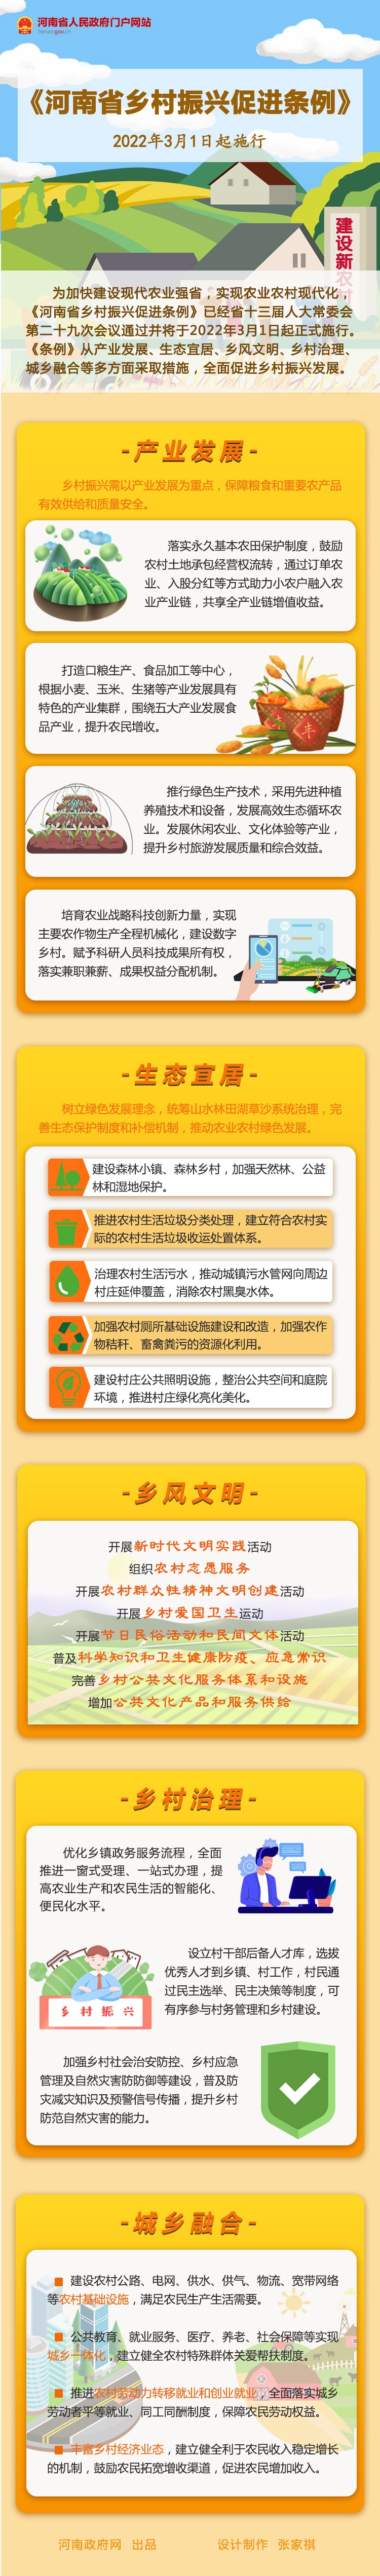 图解丨《河南省乡村振兴促进条例》3月1日起施行(图1)